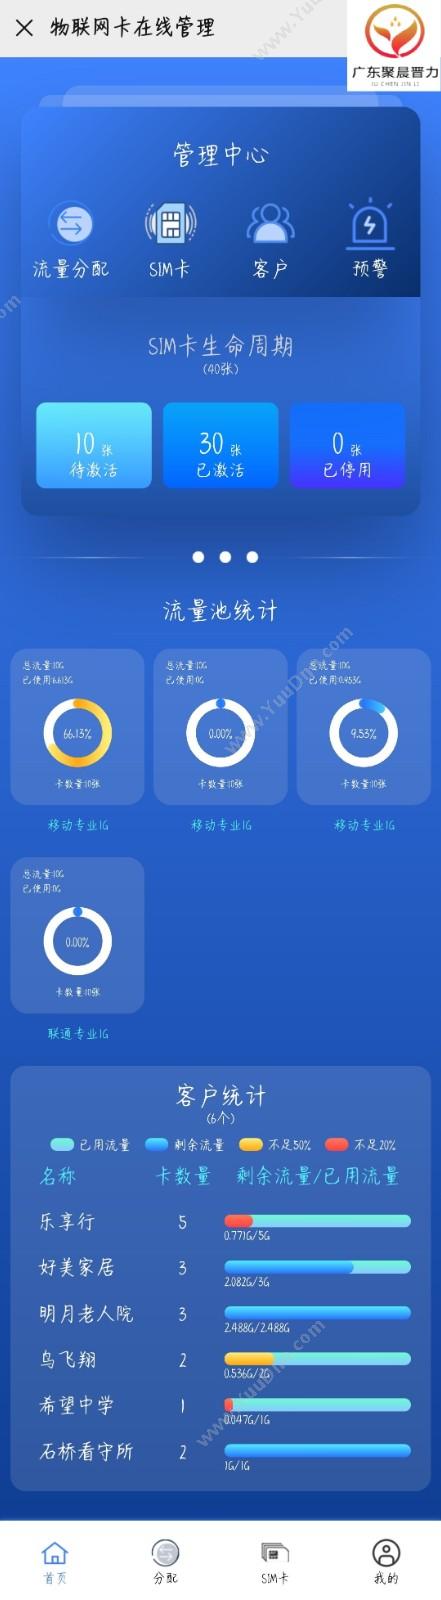 广东聚晨晋力通信设备 物联网卡在线管理 开发平台